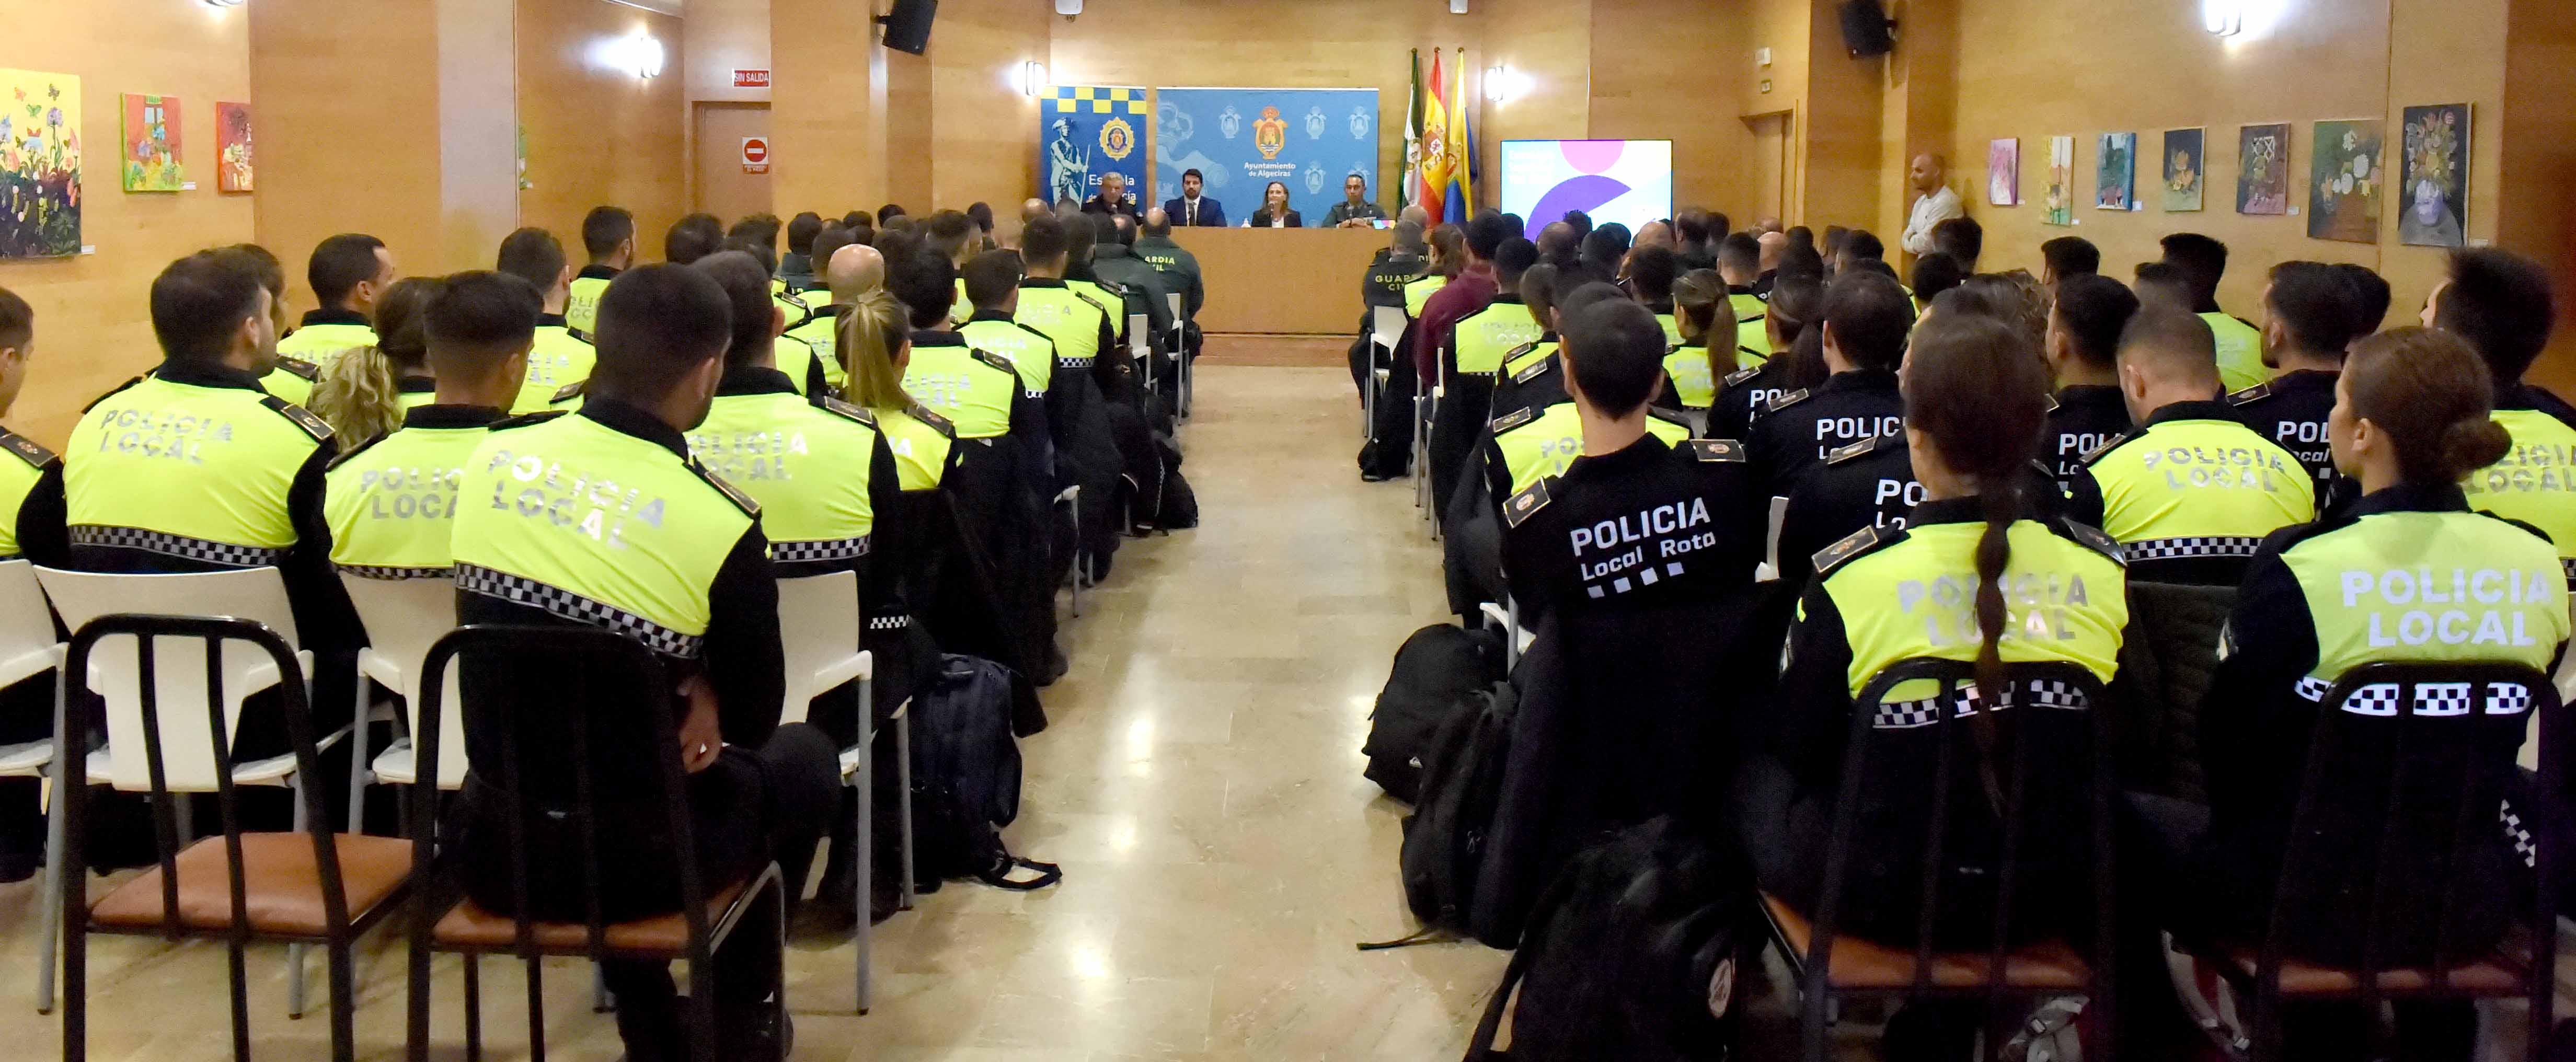 CURSO POLICIAS Y GUARDIAS CIVILES